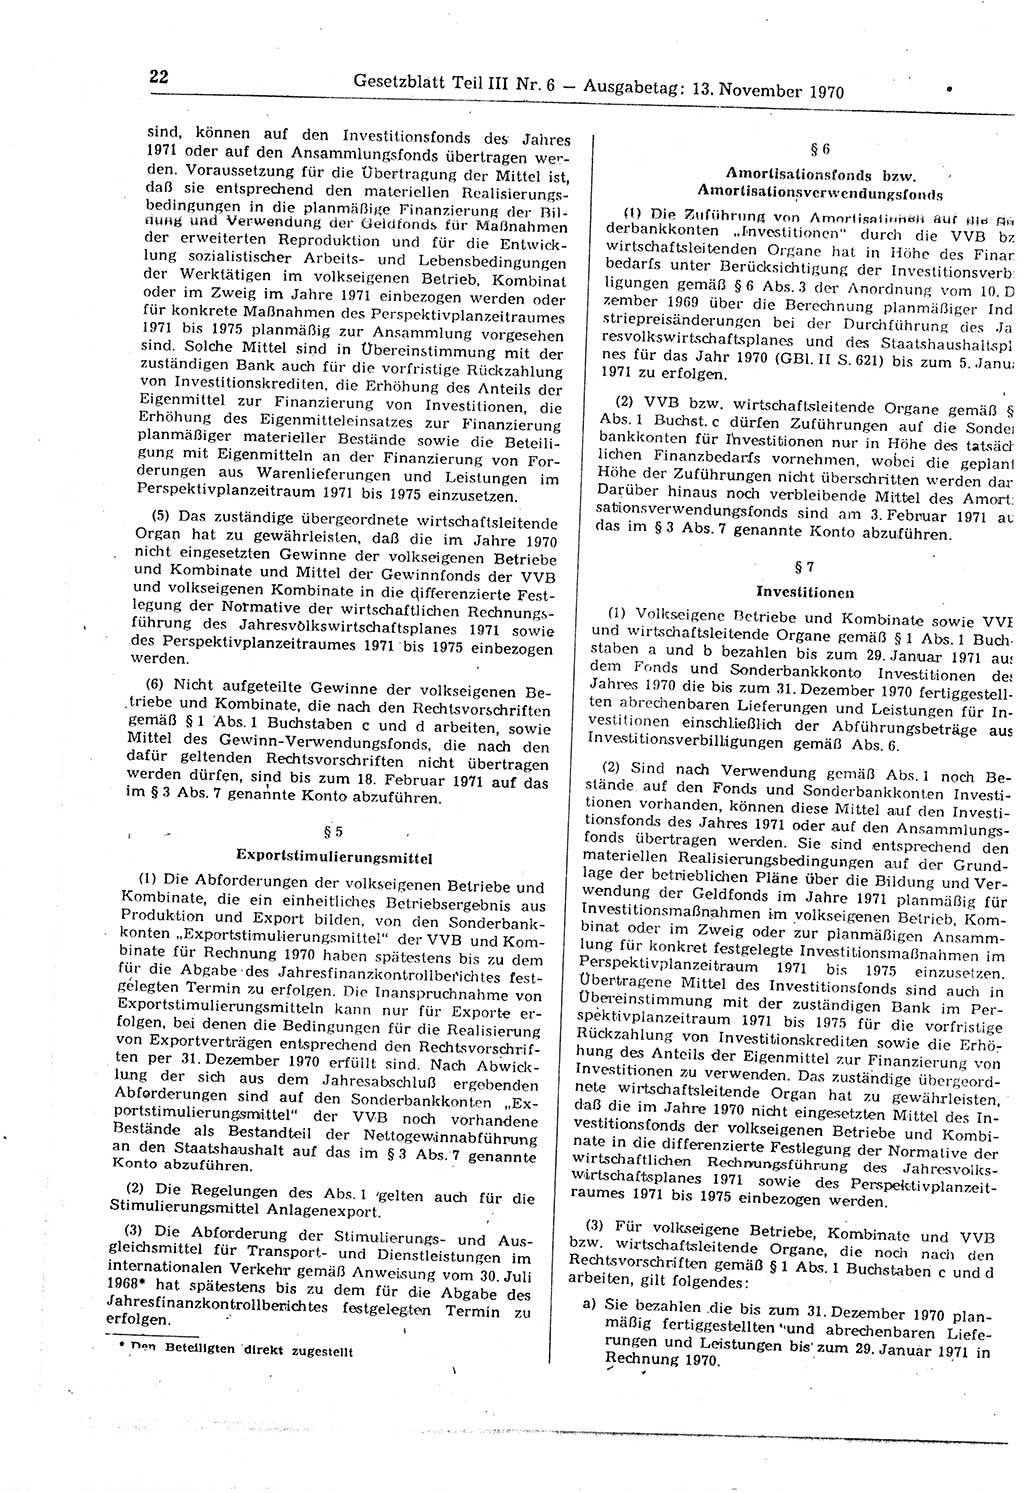 Gesetzblatt (GBl.) der Deutschen Demokratischen Republik (DDR) Teil ⅠⅠⅠ 1970, Seite 22 (GBl. DDR ⅠⅠⅠ 1970, S. 22)